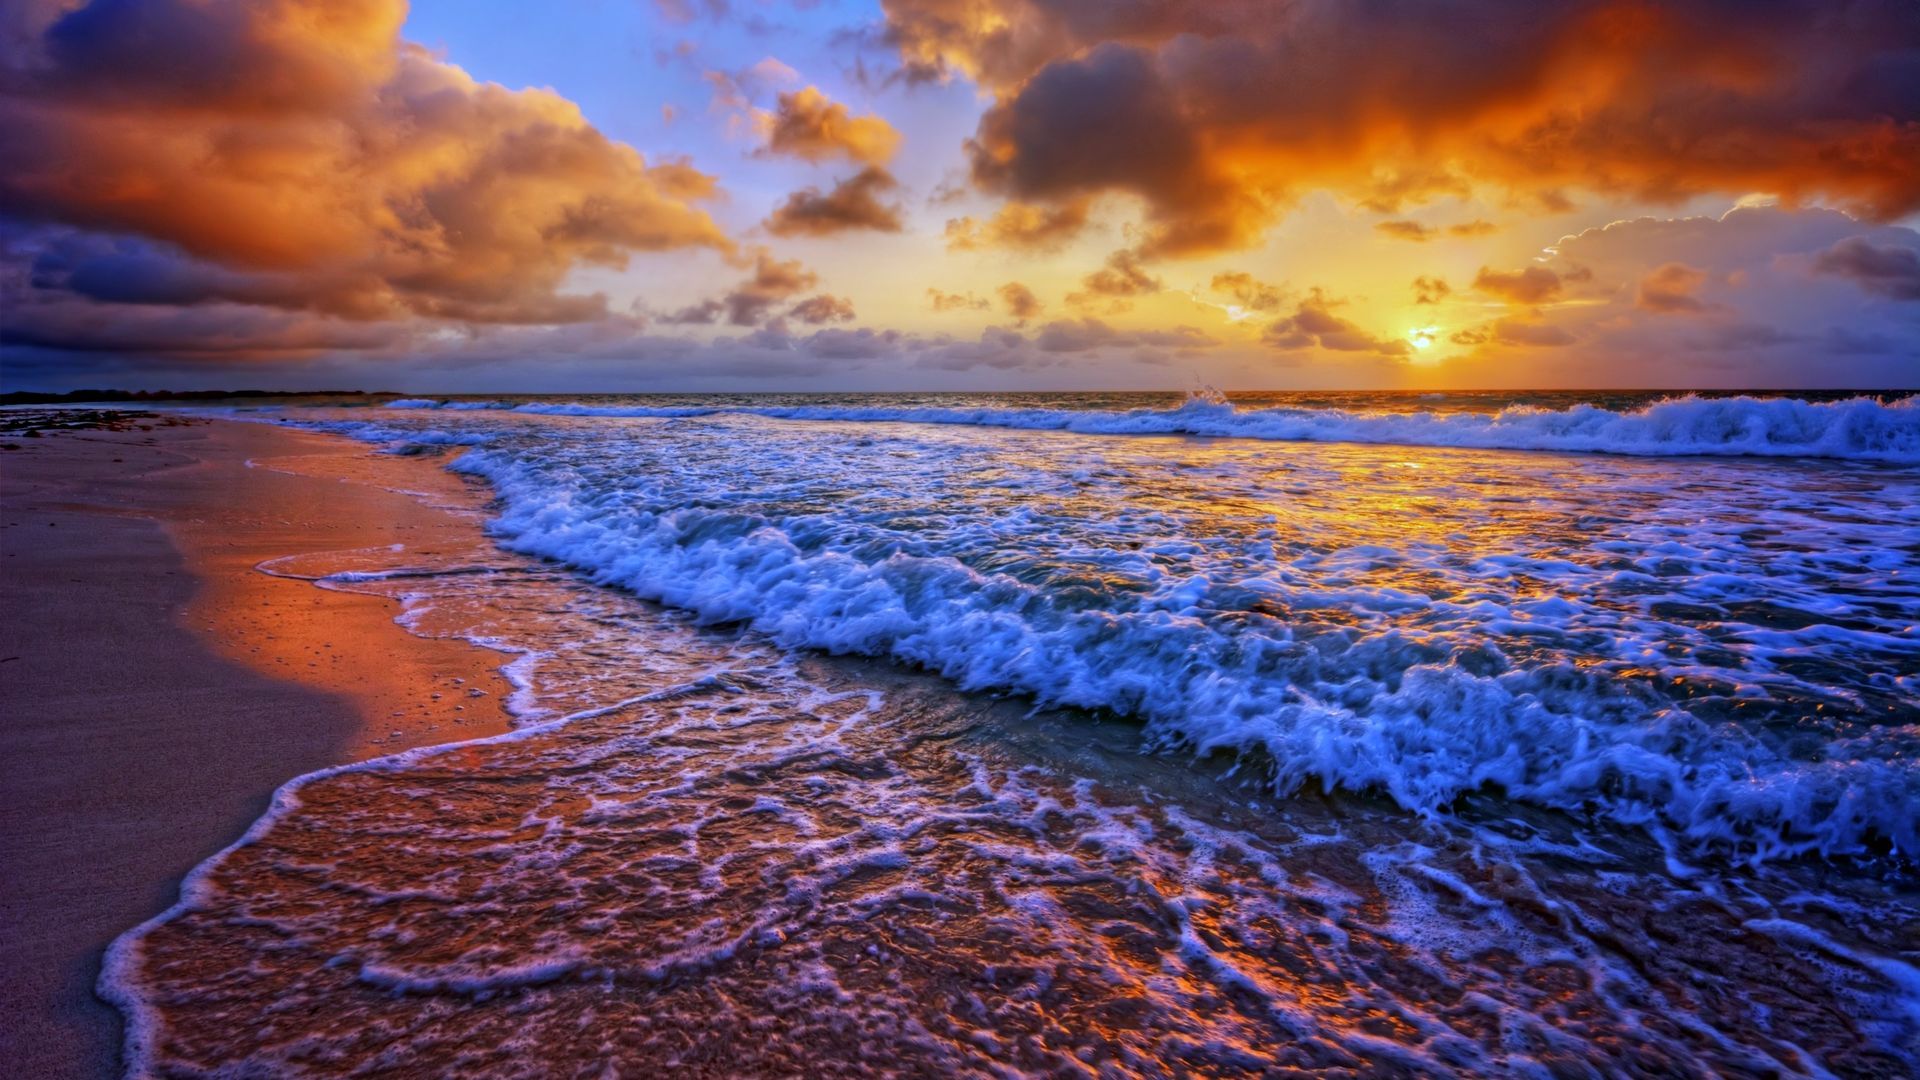 Beach Sunset Wallpaper 1080p Resolution Ocean Waves